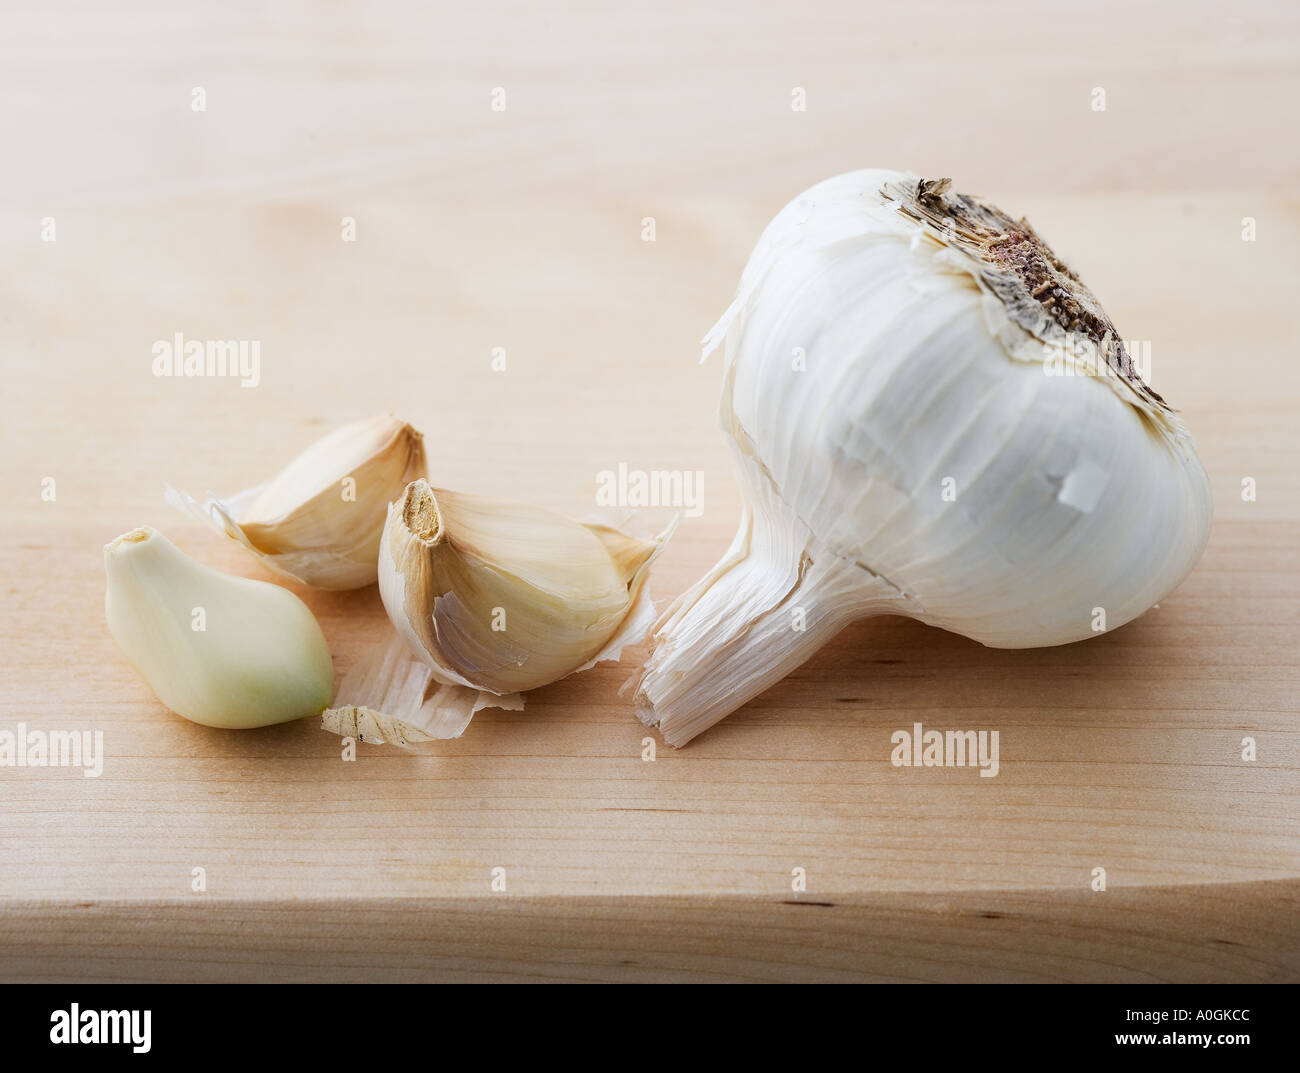 closeup-of-garlic-head-and-cloves-A0GKCC